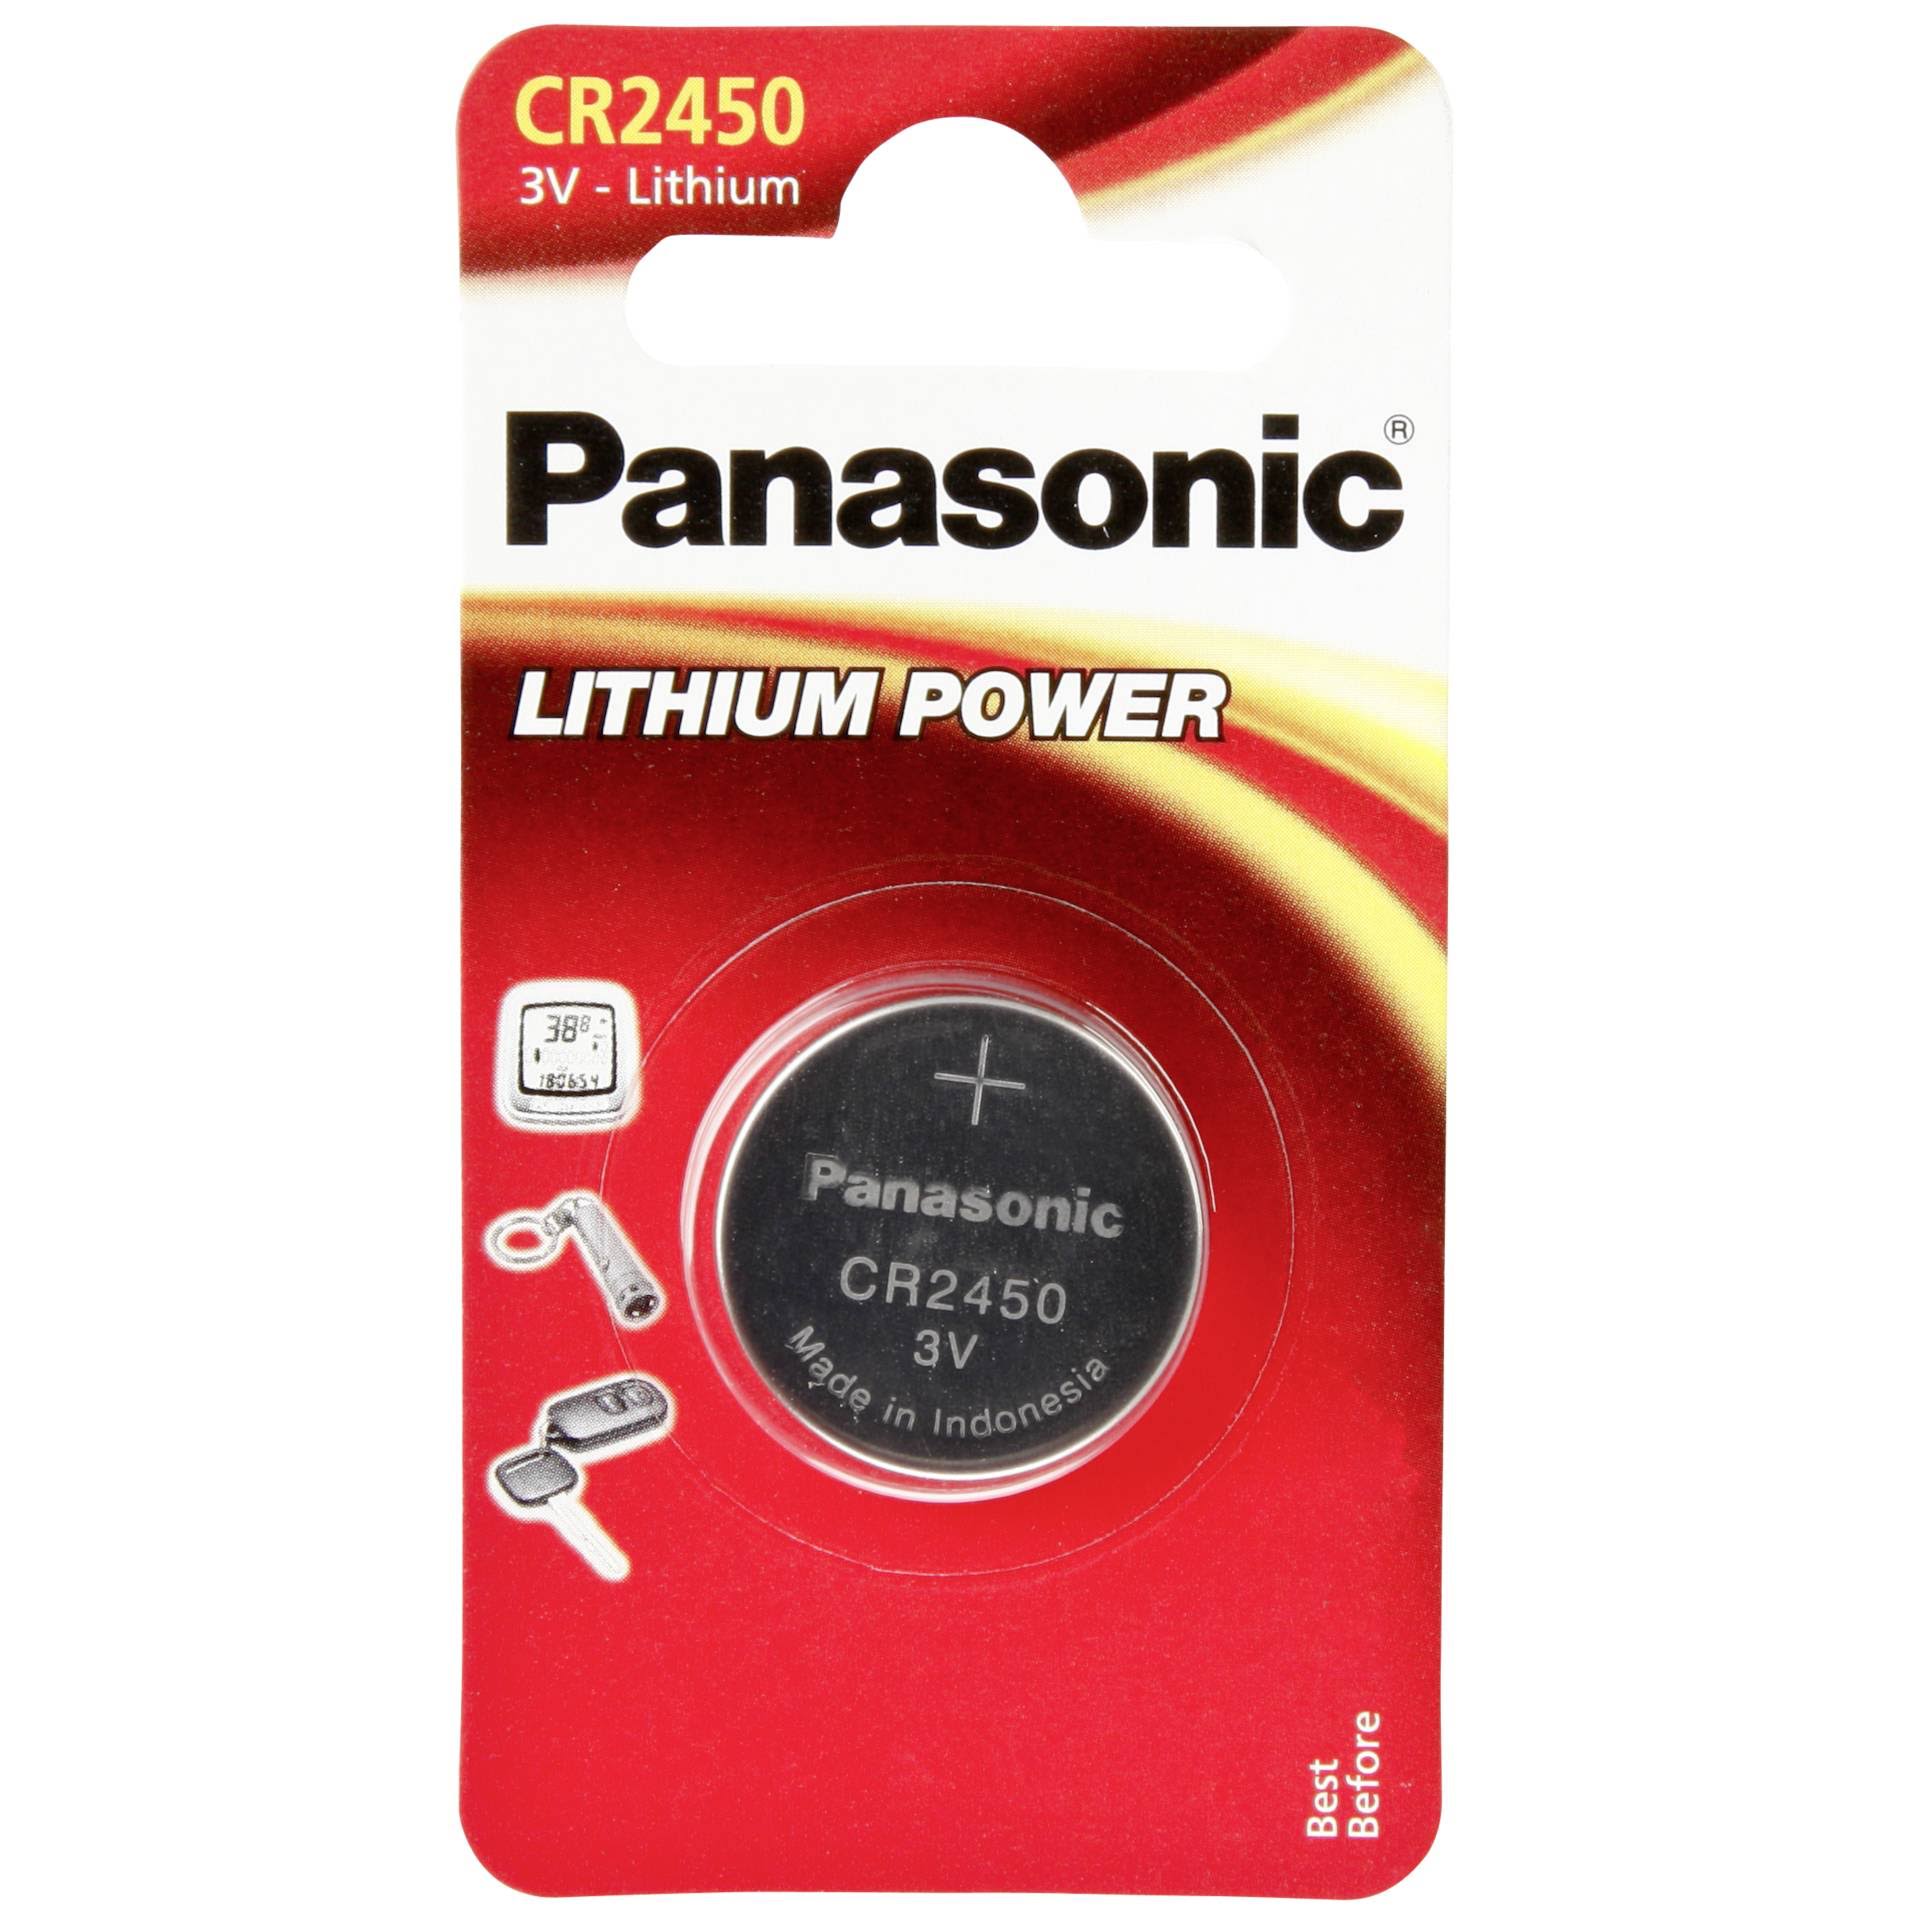 Panasonic Lithium Power CR2450 Battery